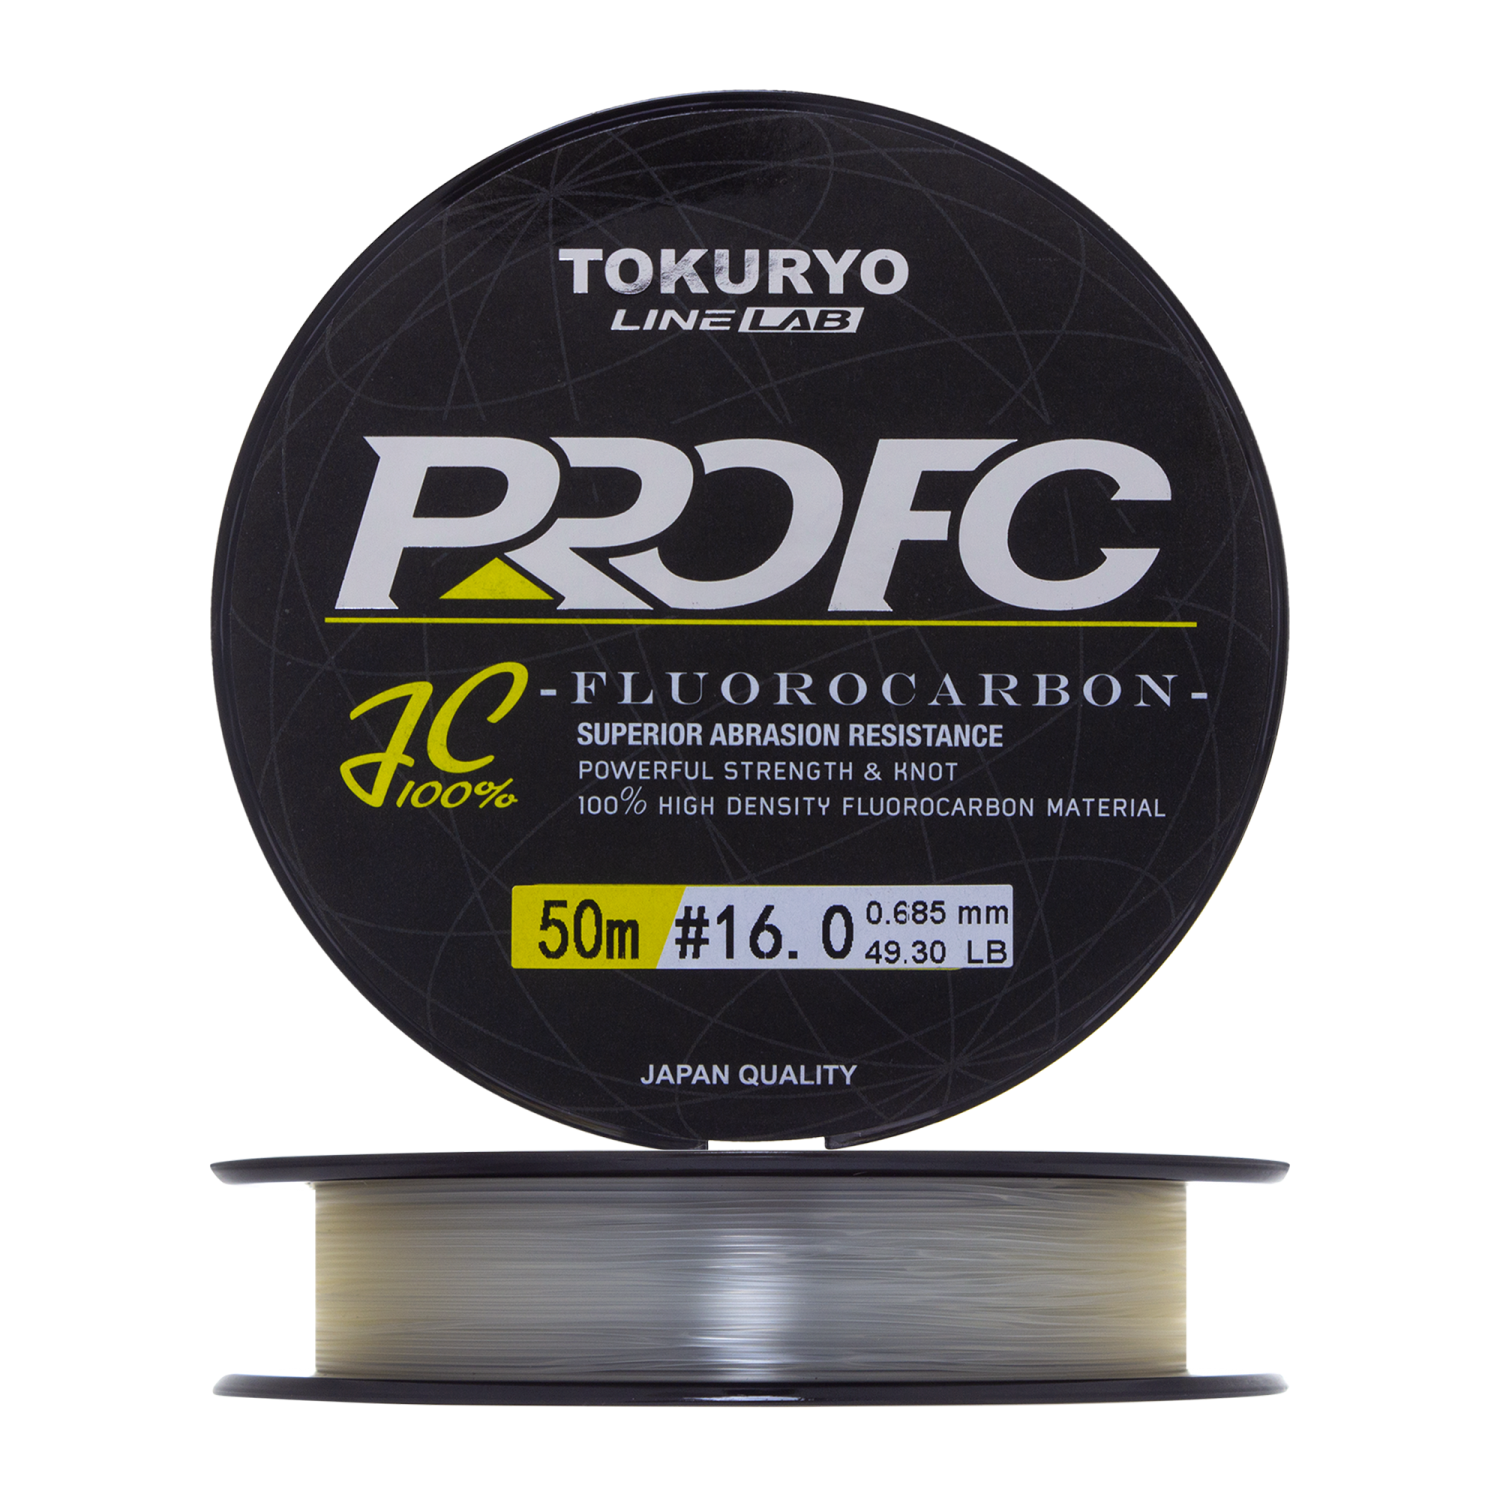 Флюорокарбон Tokuryo Fluorocarbon Pro FC #16 50м (clear)